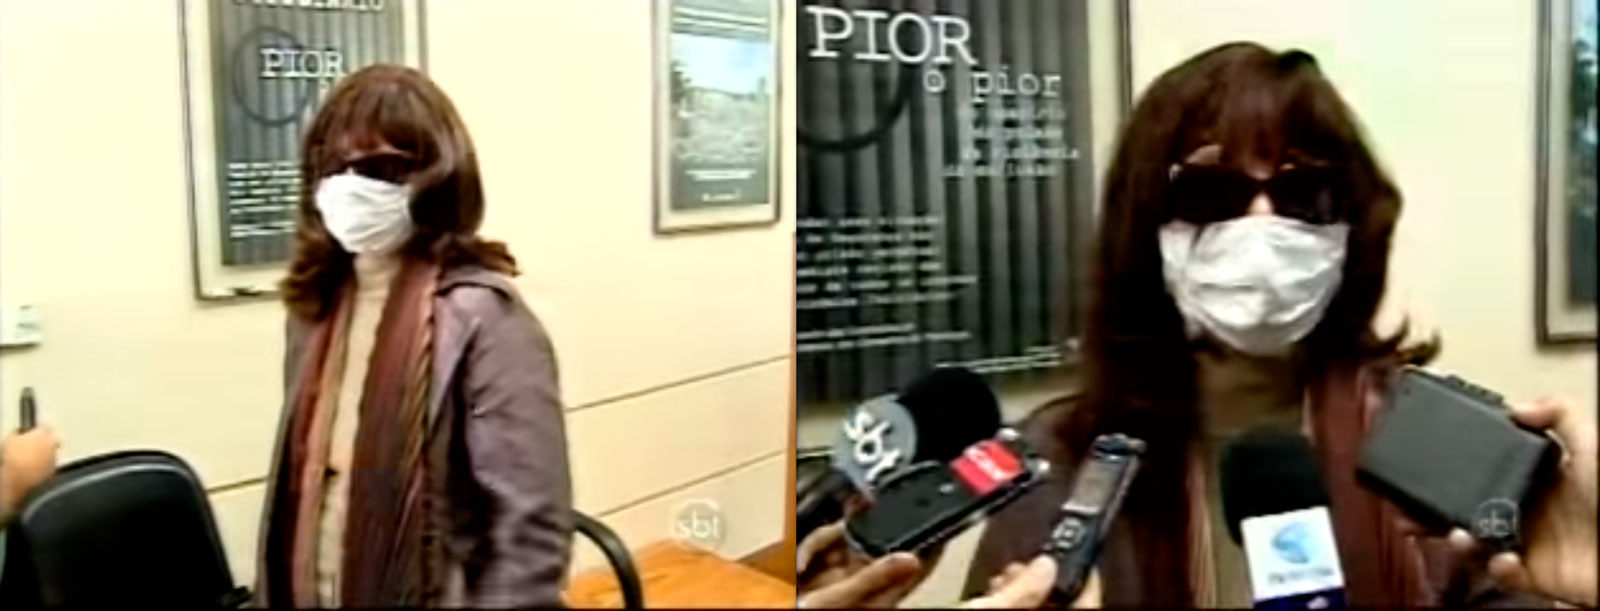 De peruca, óculos escuros e máscara, Rozângela se apresentou ao Conselho de Psicologia do Rio de Janeiro em 2009, após ser denunciada por realizar tratamento de alteração da sexualidade